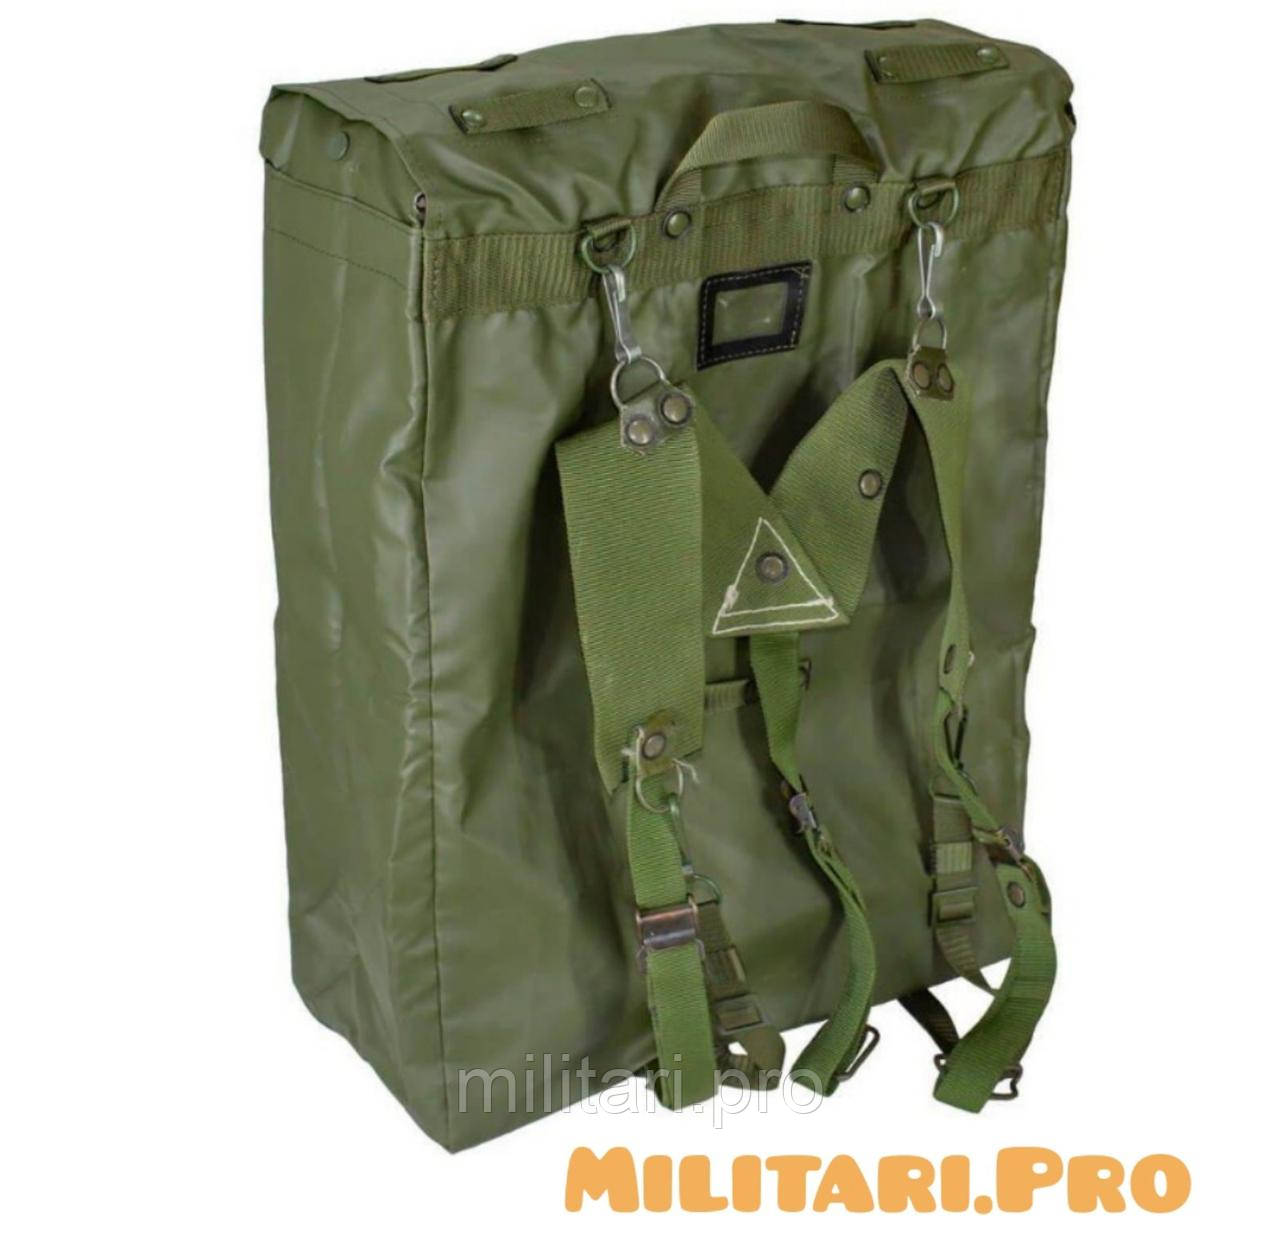 Купити - Рюкзак армії Чехії M85. Оригінал. 45 літрів. Складське зберігання.